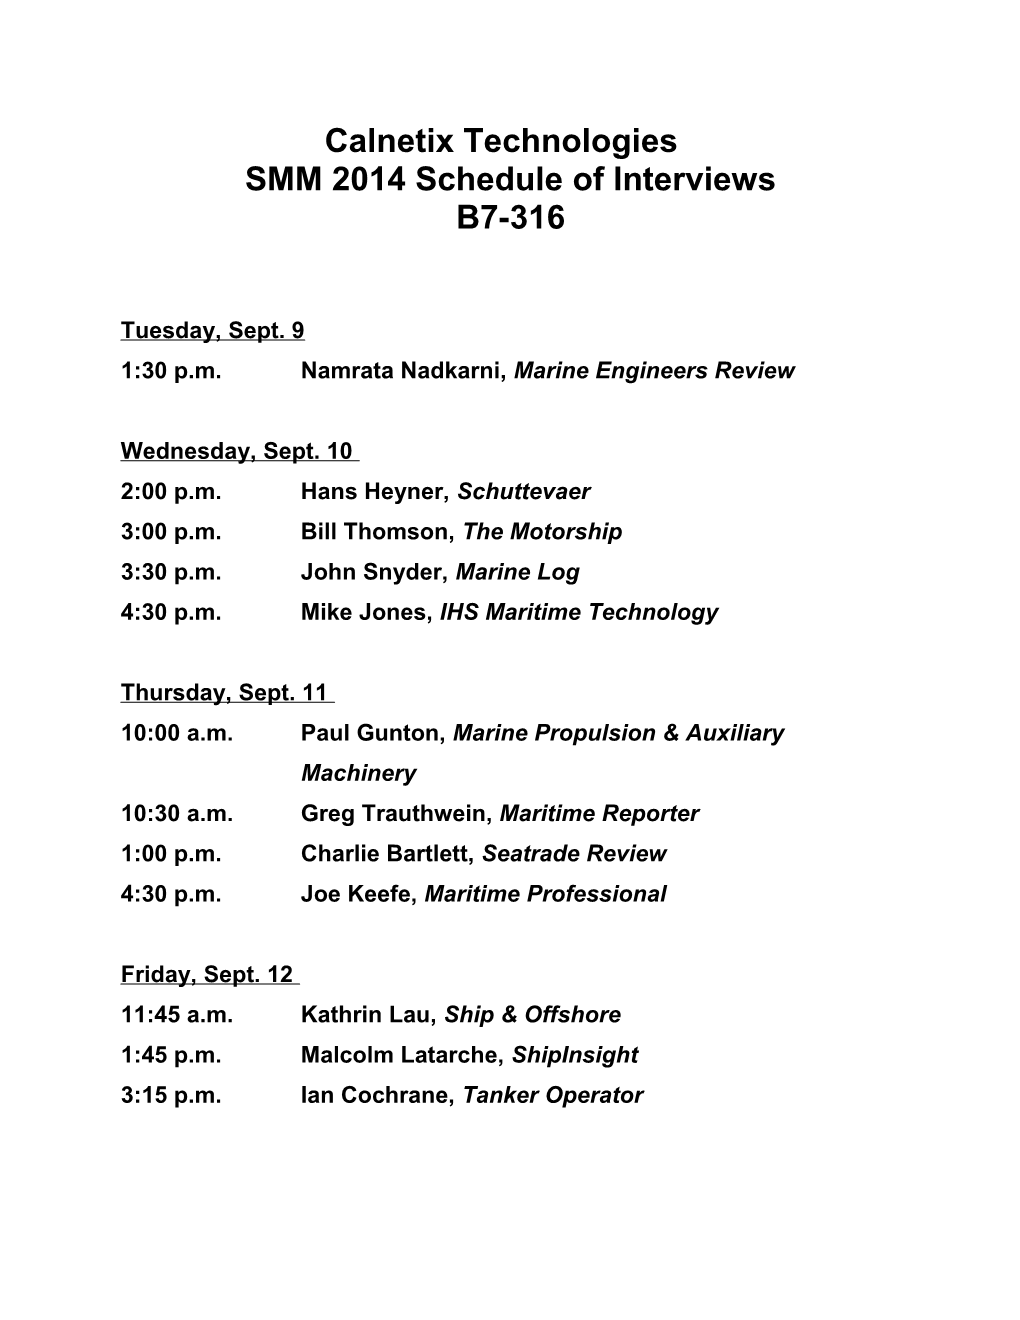 SMM 2014 Schedule of Interviews